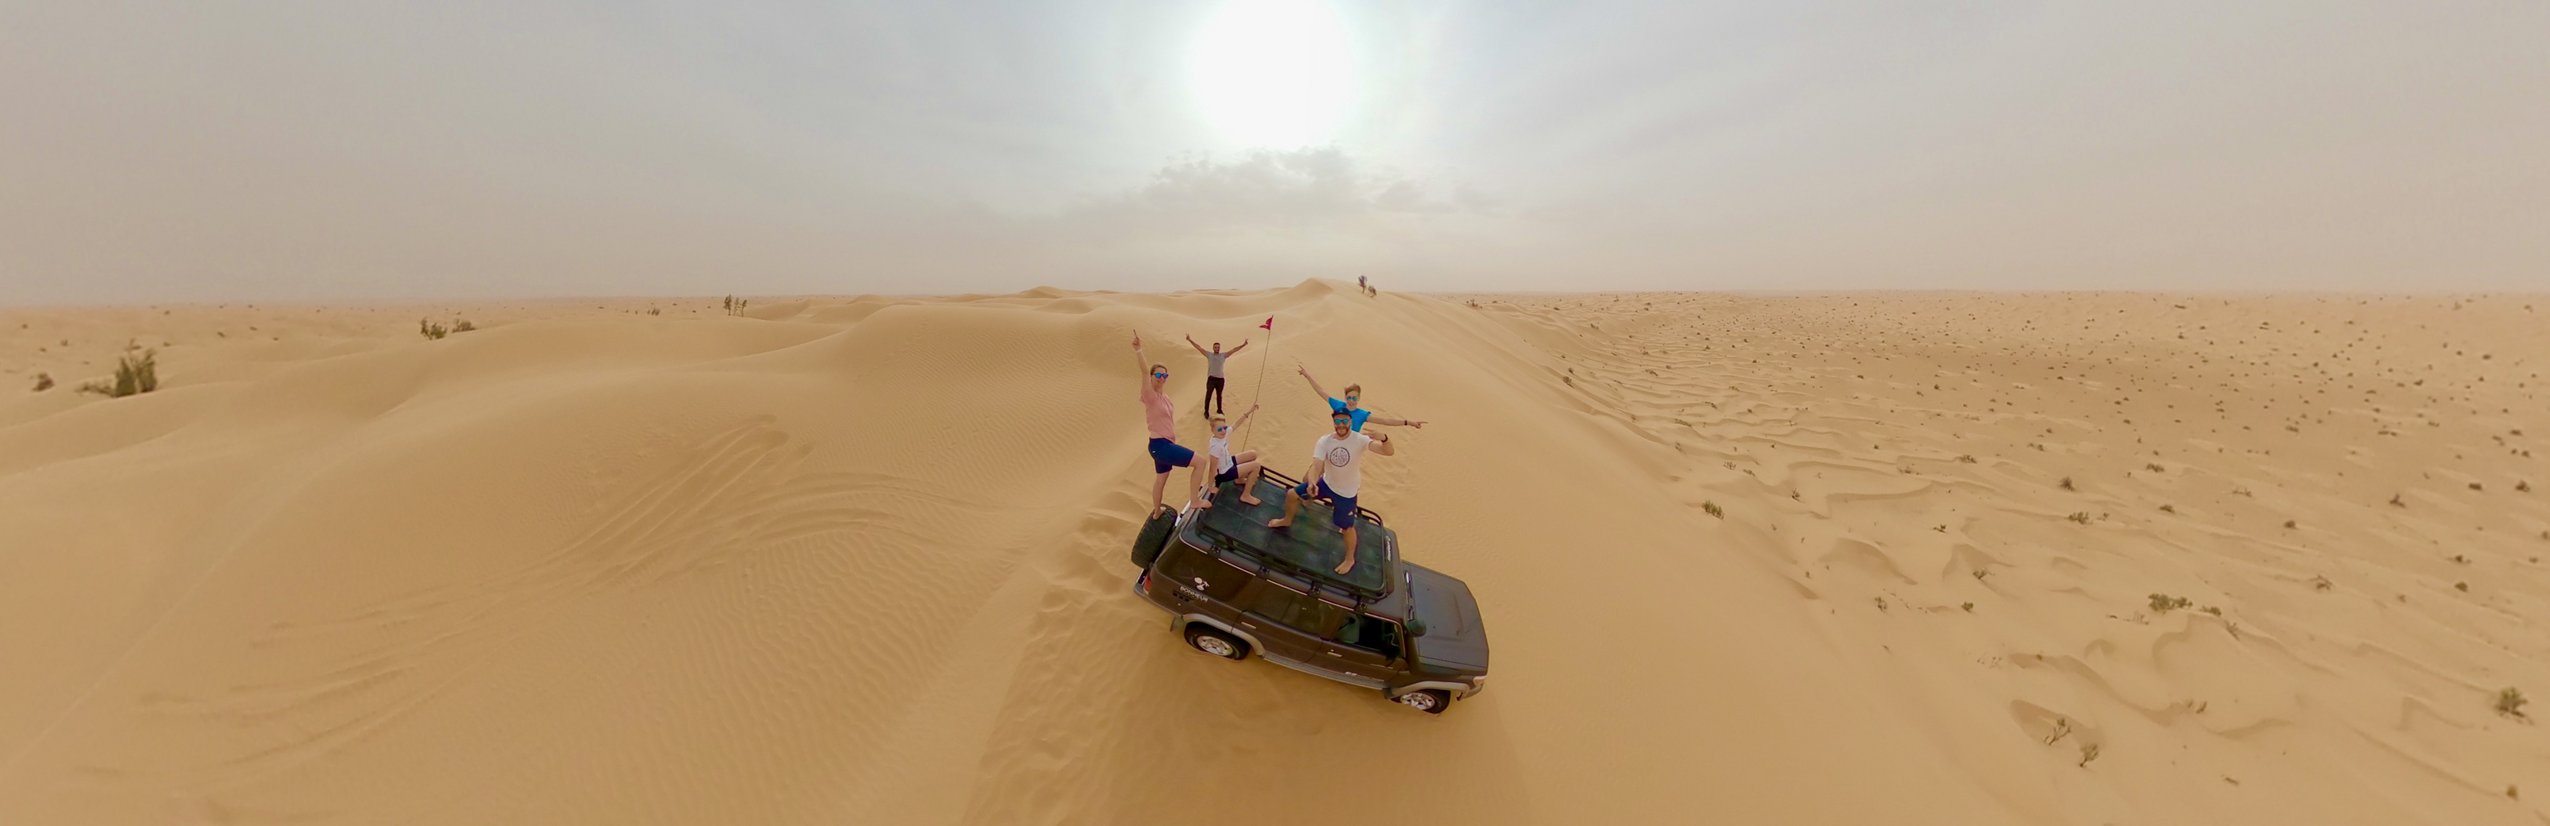 Tunesien for family - Reisebericht zu Tunesien mit Kindern - Familie mit Jeep in der Wüste